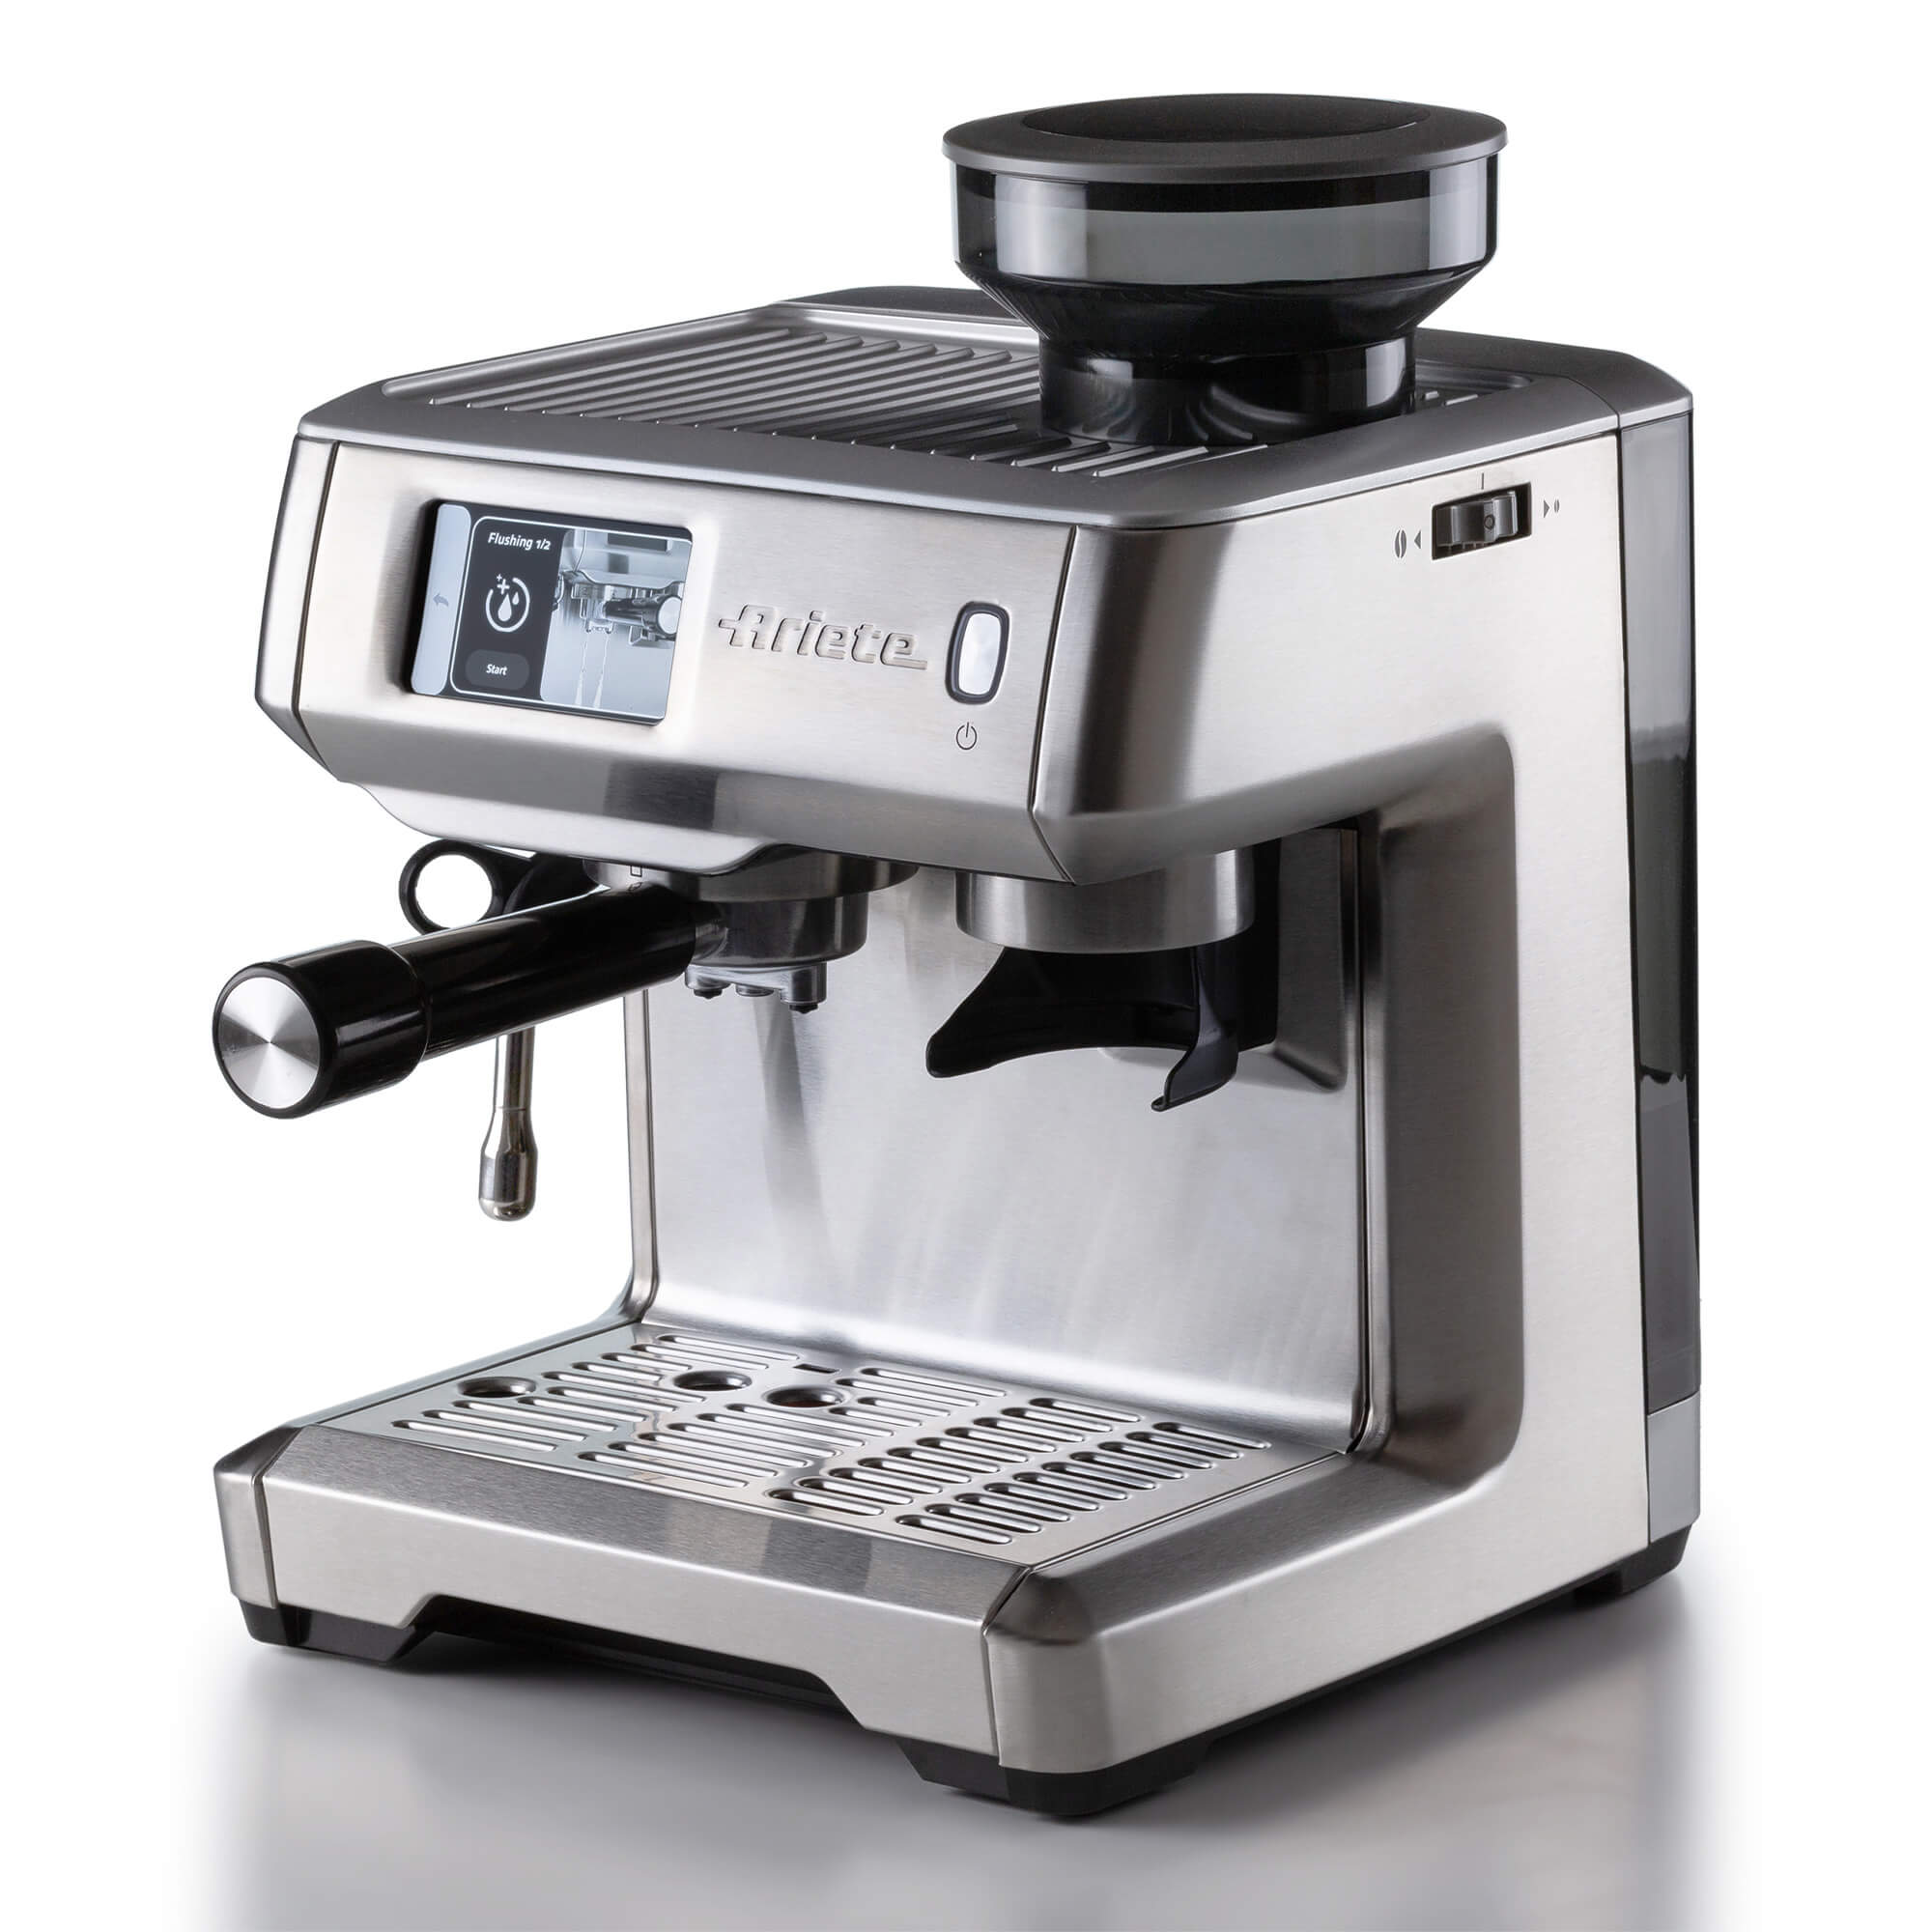 Coffee machine with digital display, Espresso coffee machine 13